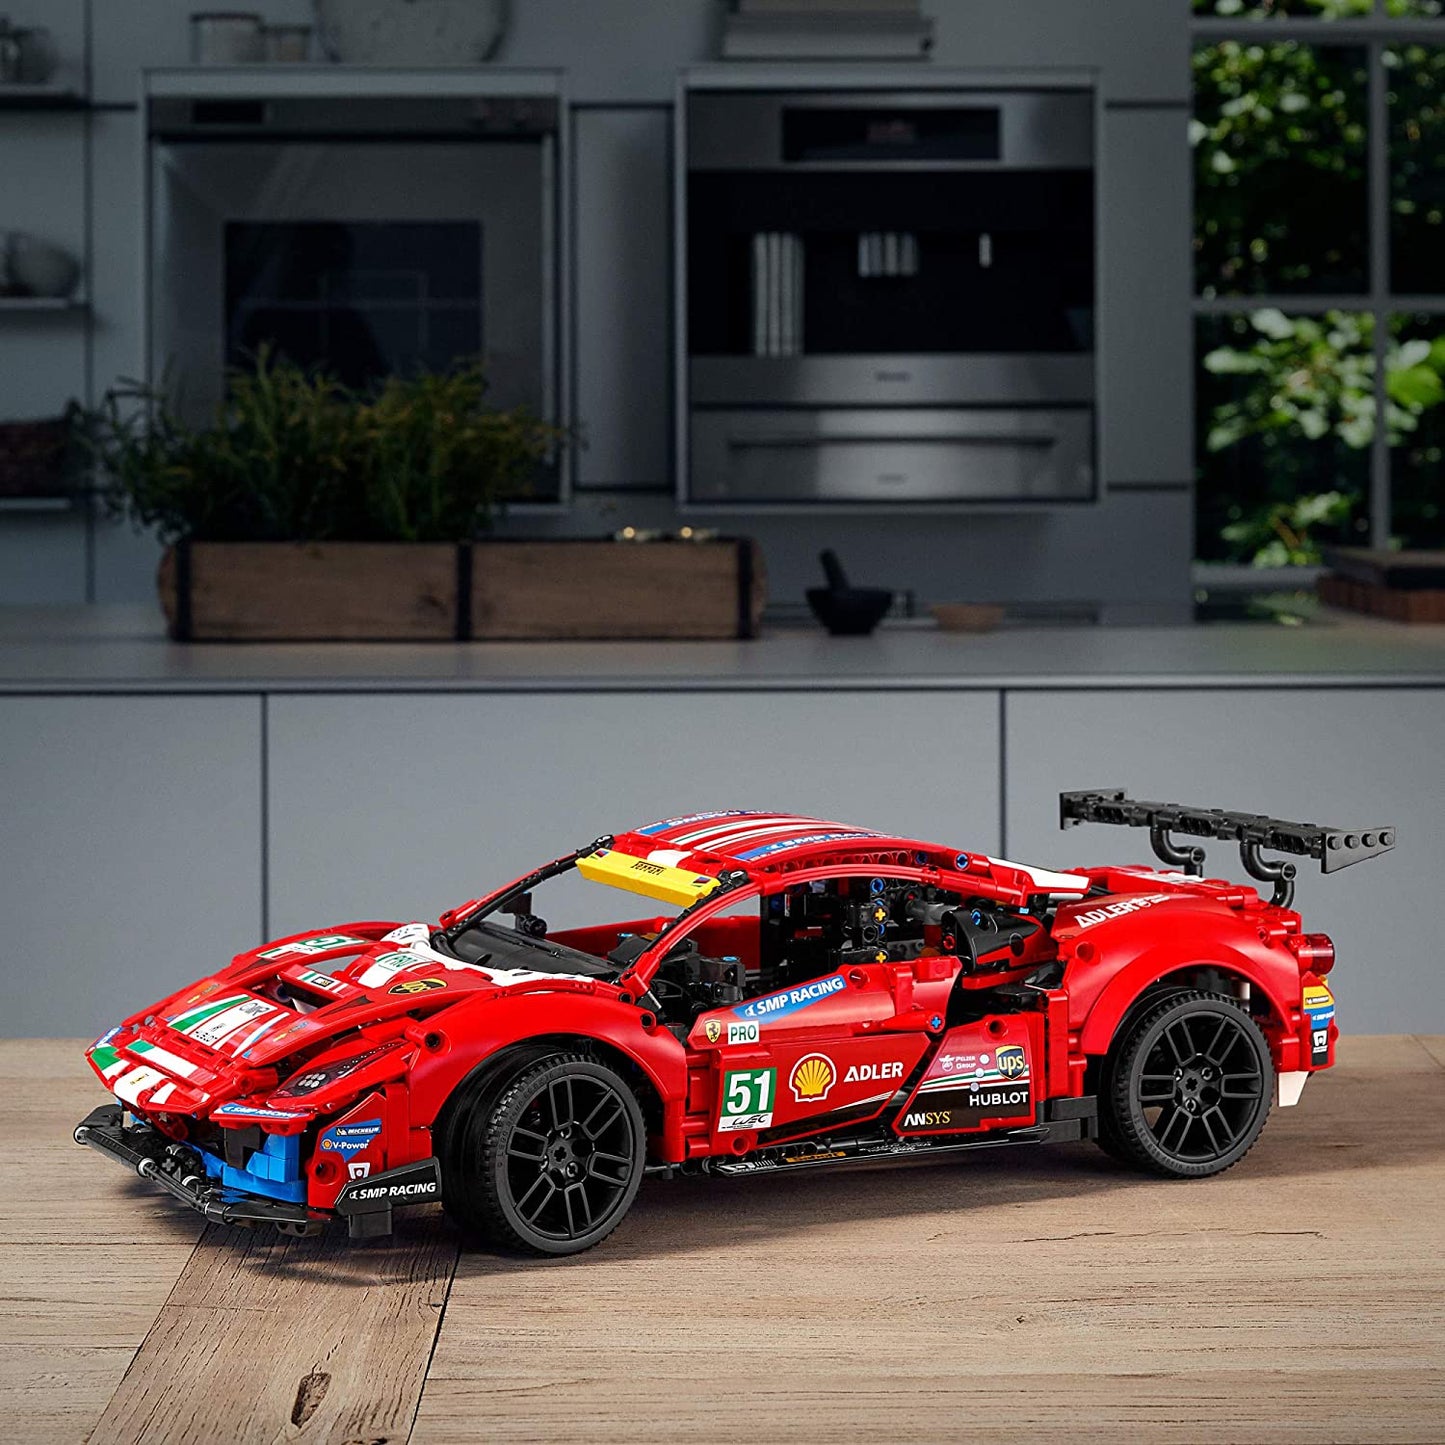 LEGO Technic - 42125 Ferrari 488 GTE